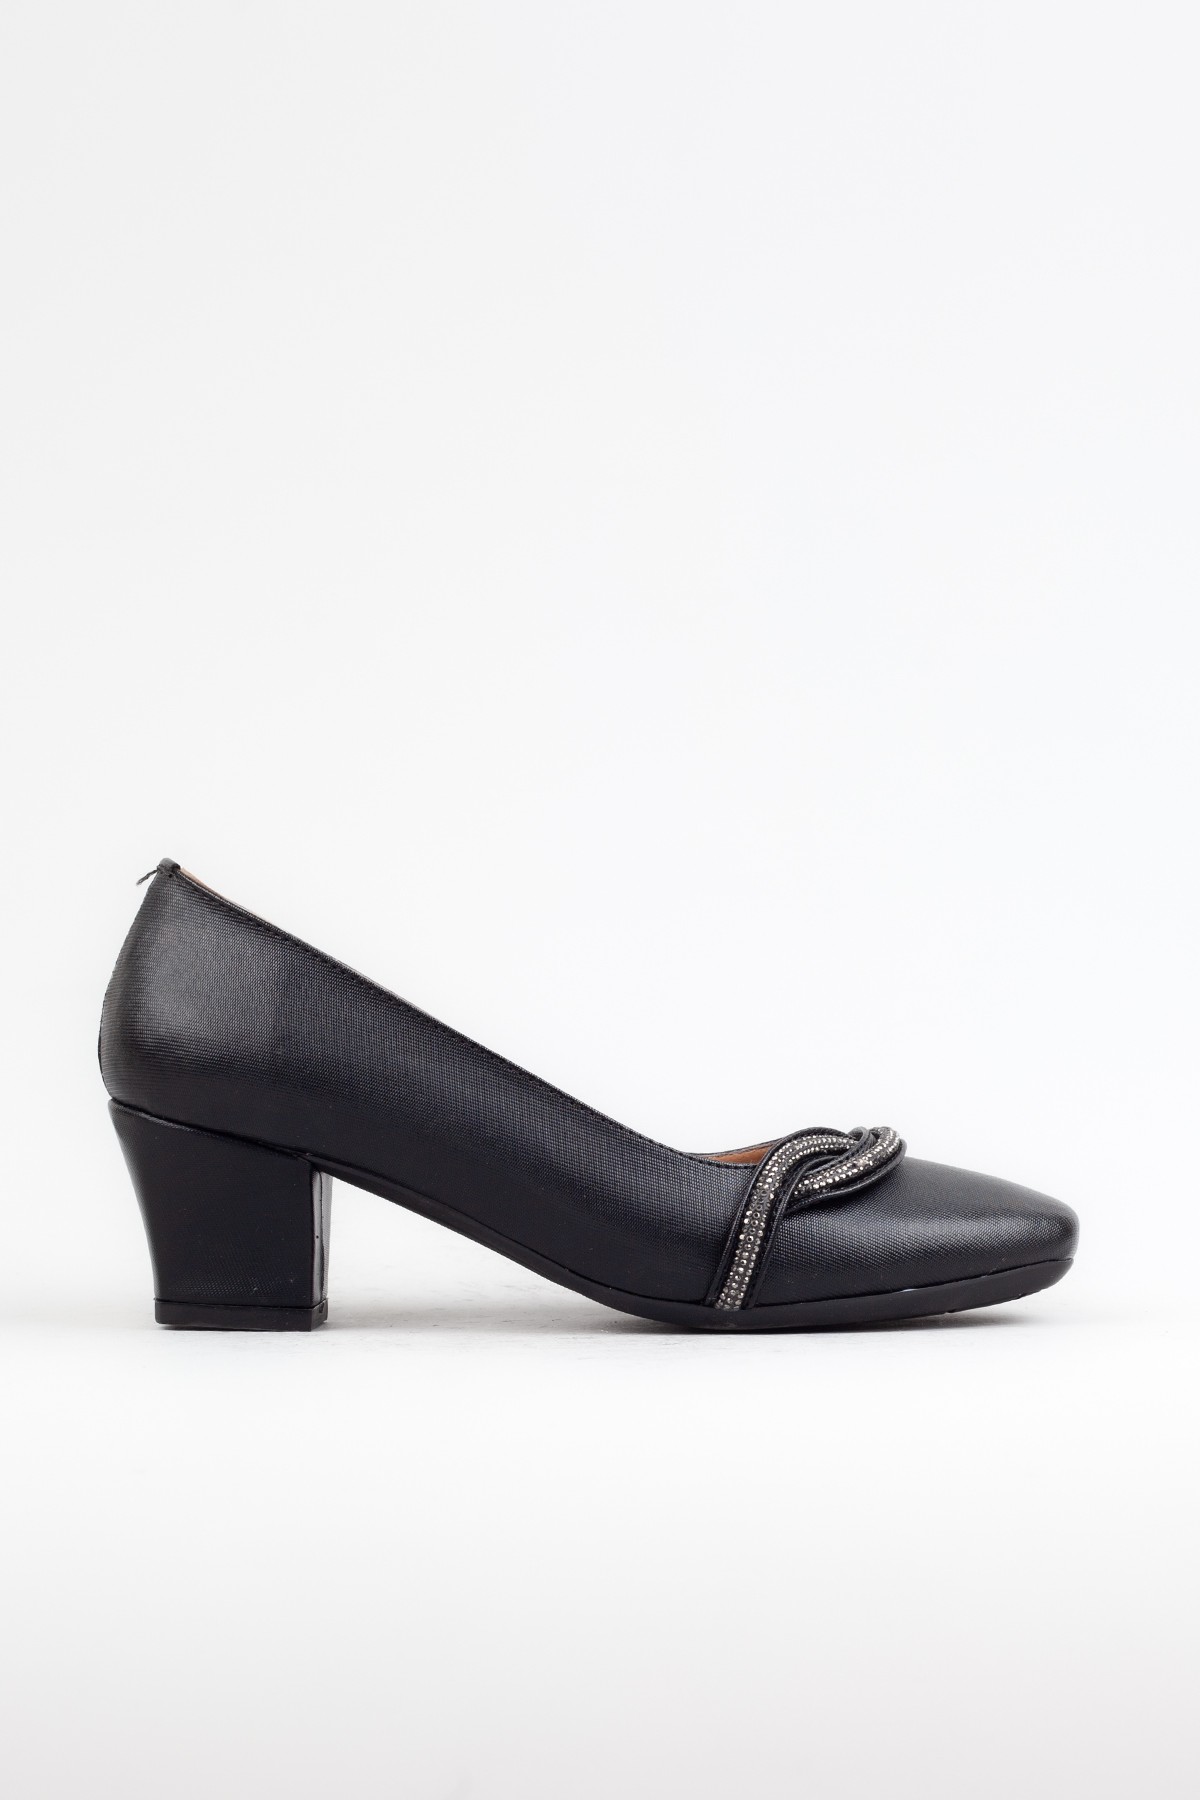 Kadın Klasik Topuklu Ayakkabı, Kalın Topuklu Ayakkabı